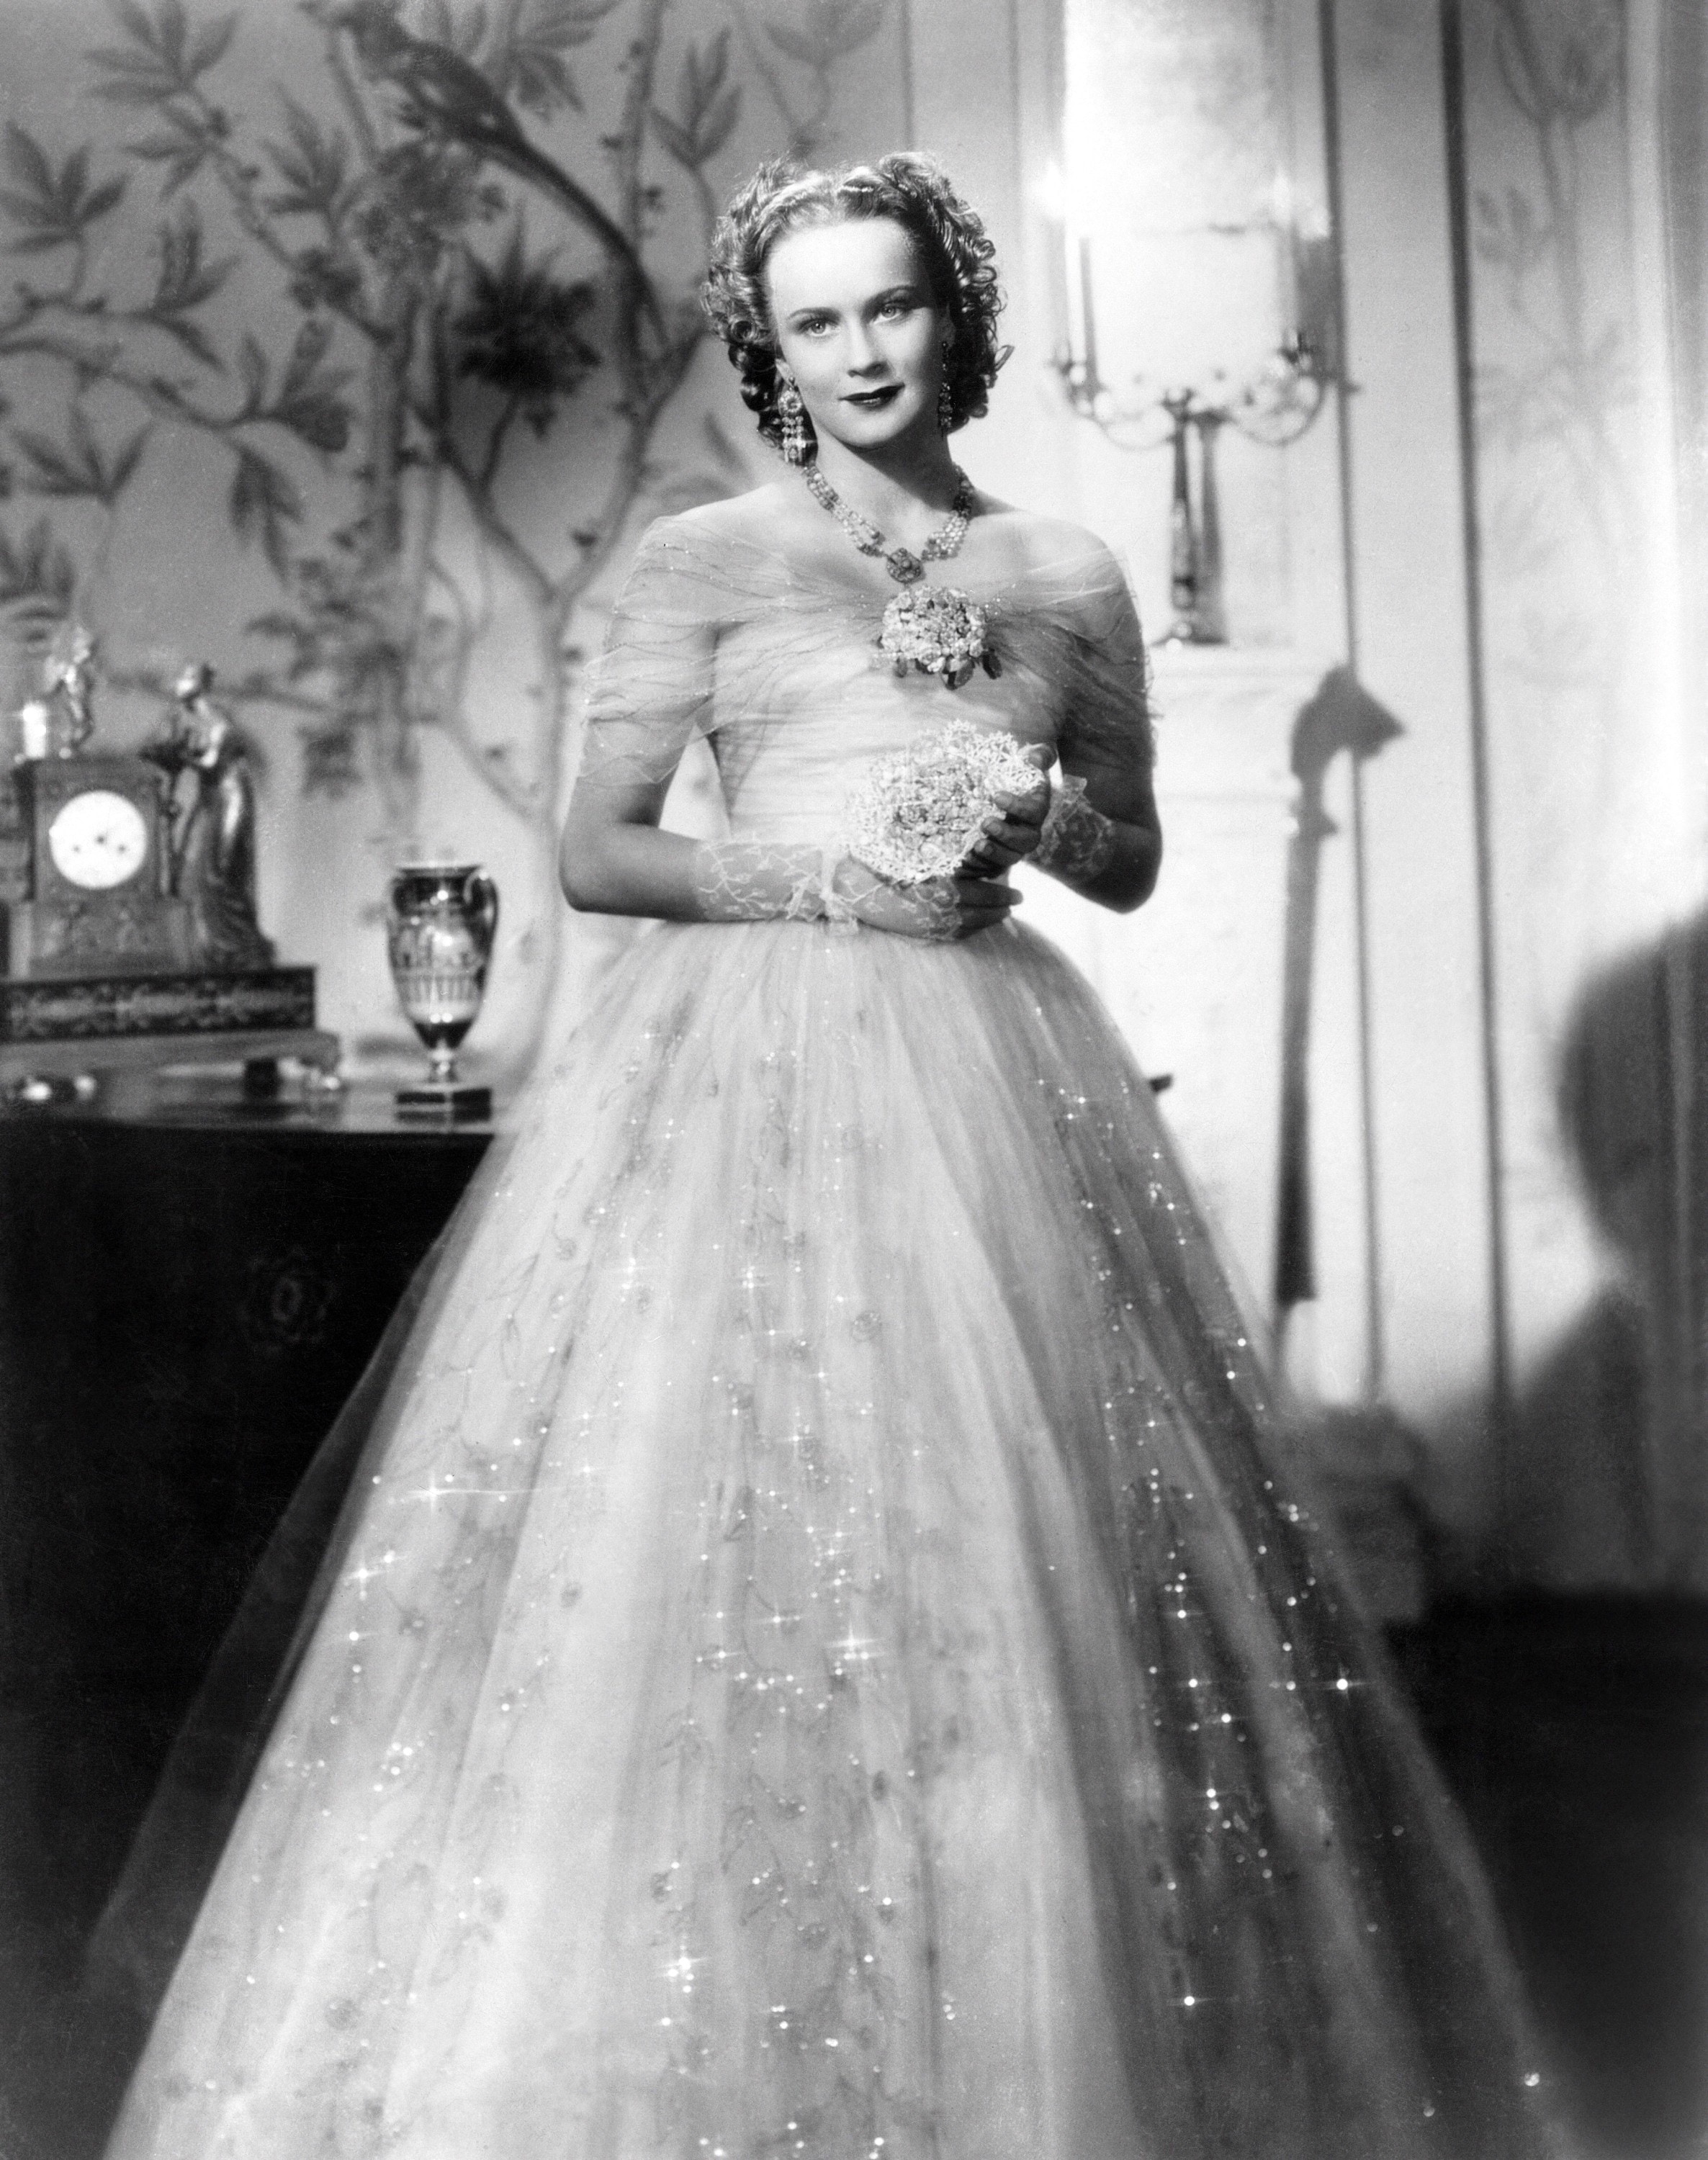 "Manon Lescaut", 1940